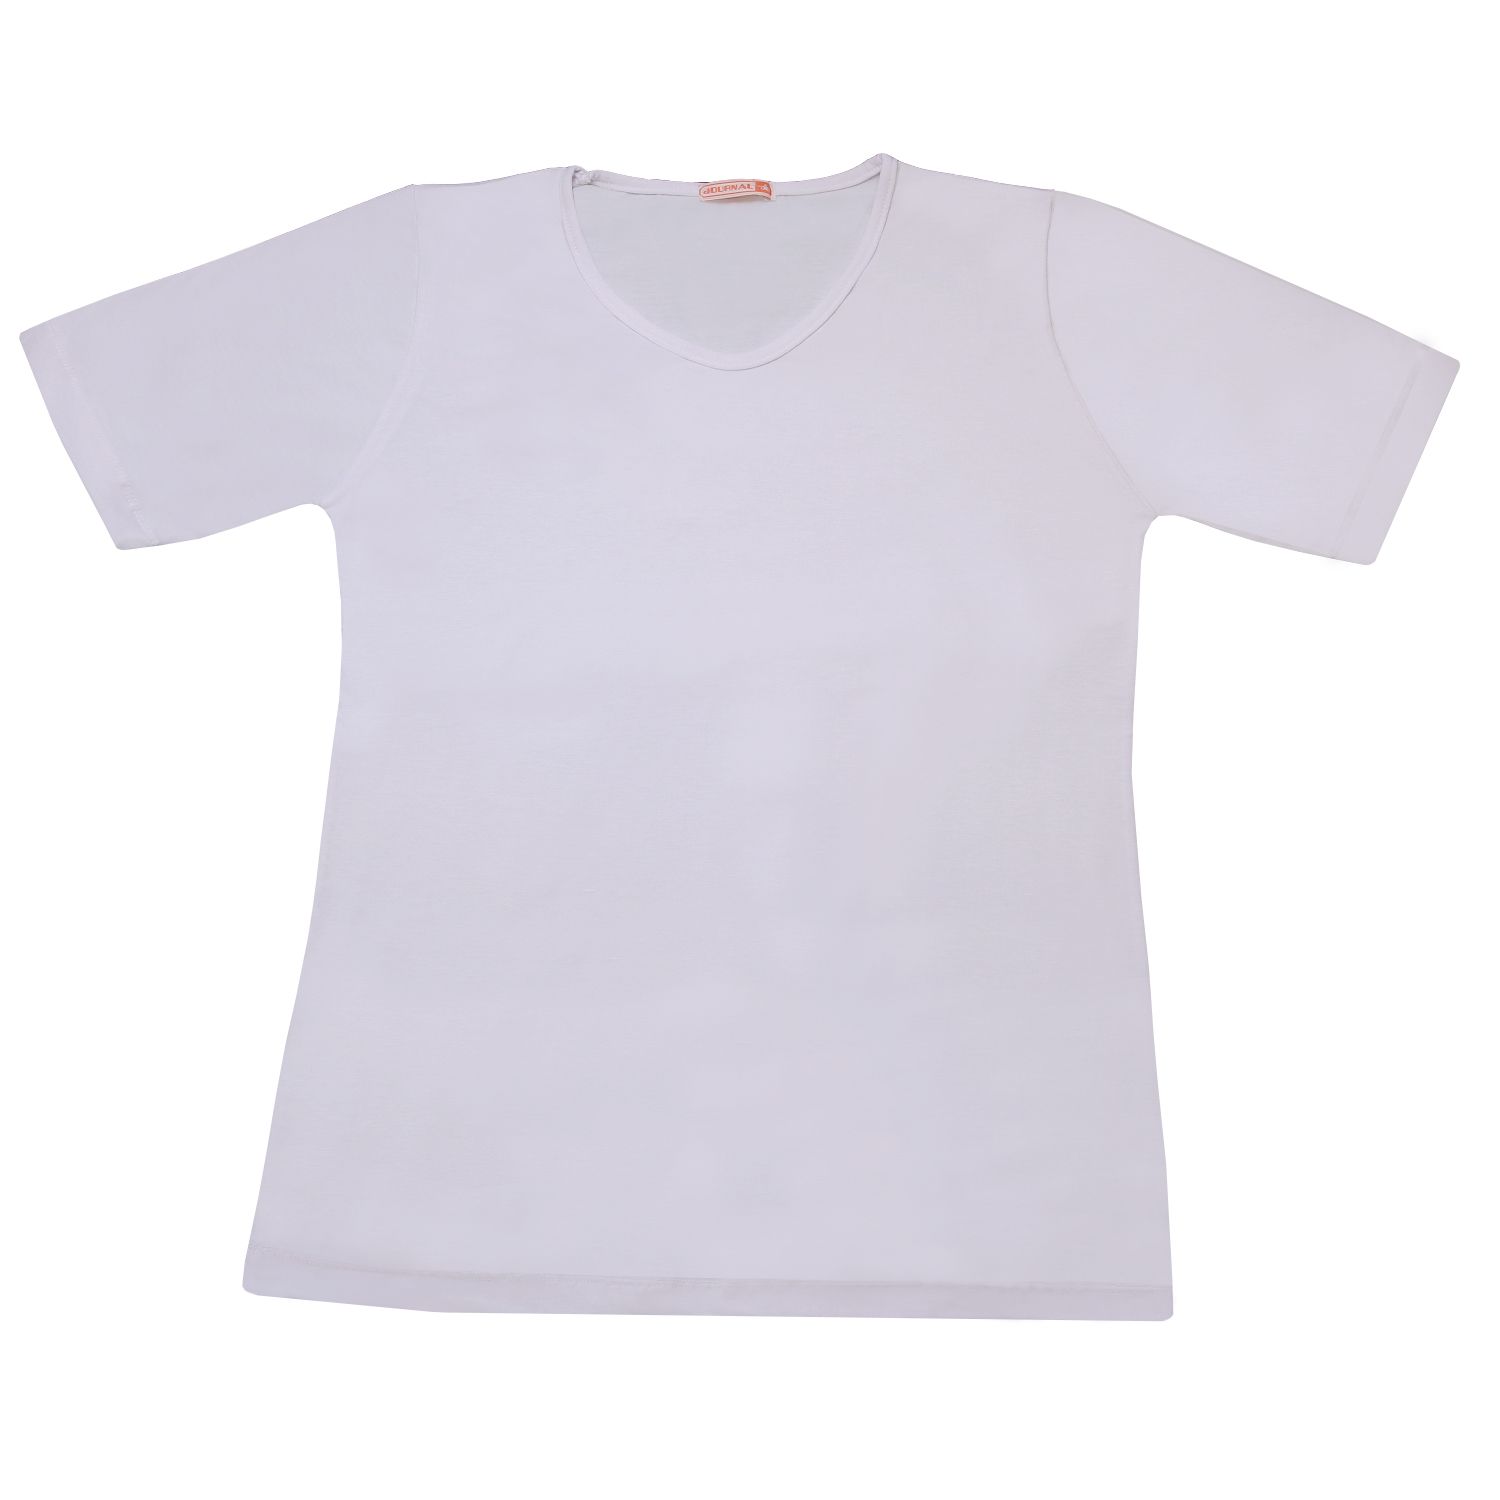 تی شرت زنانه کد 21702 رنگ سفید -  - 1